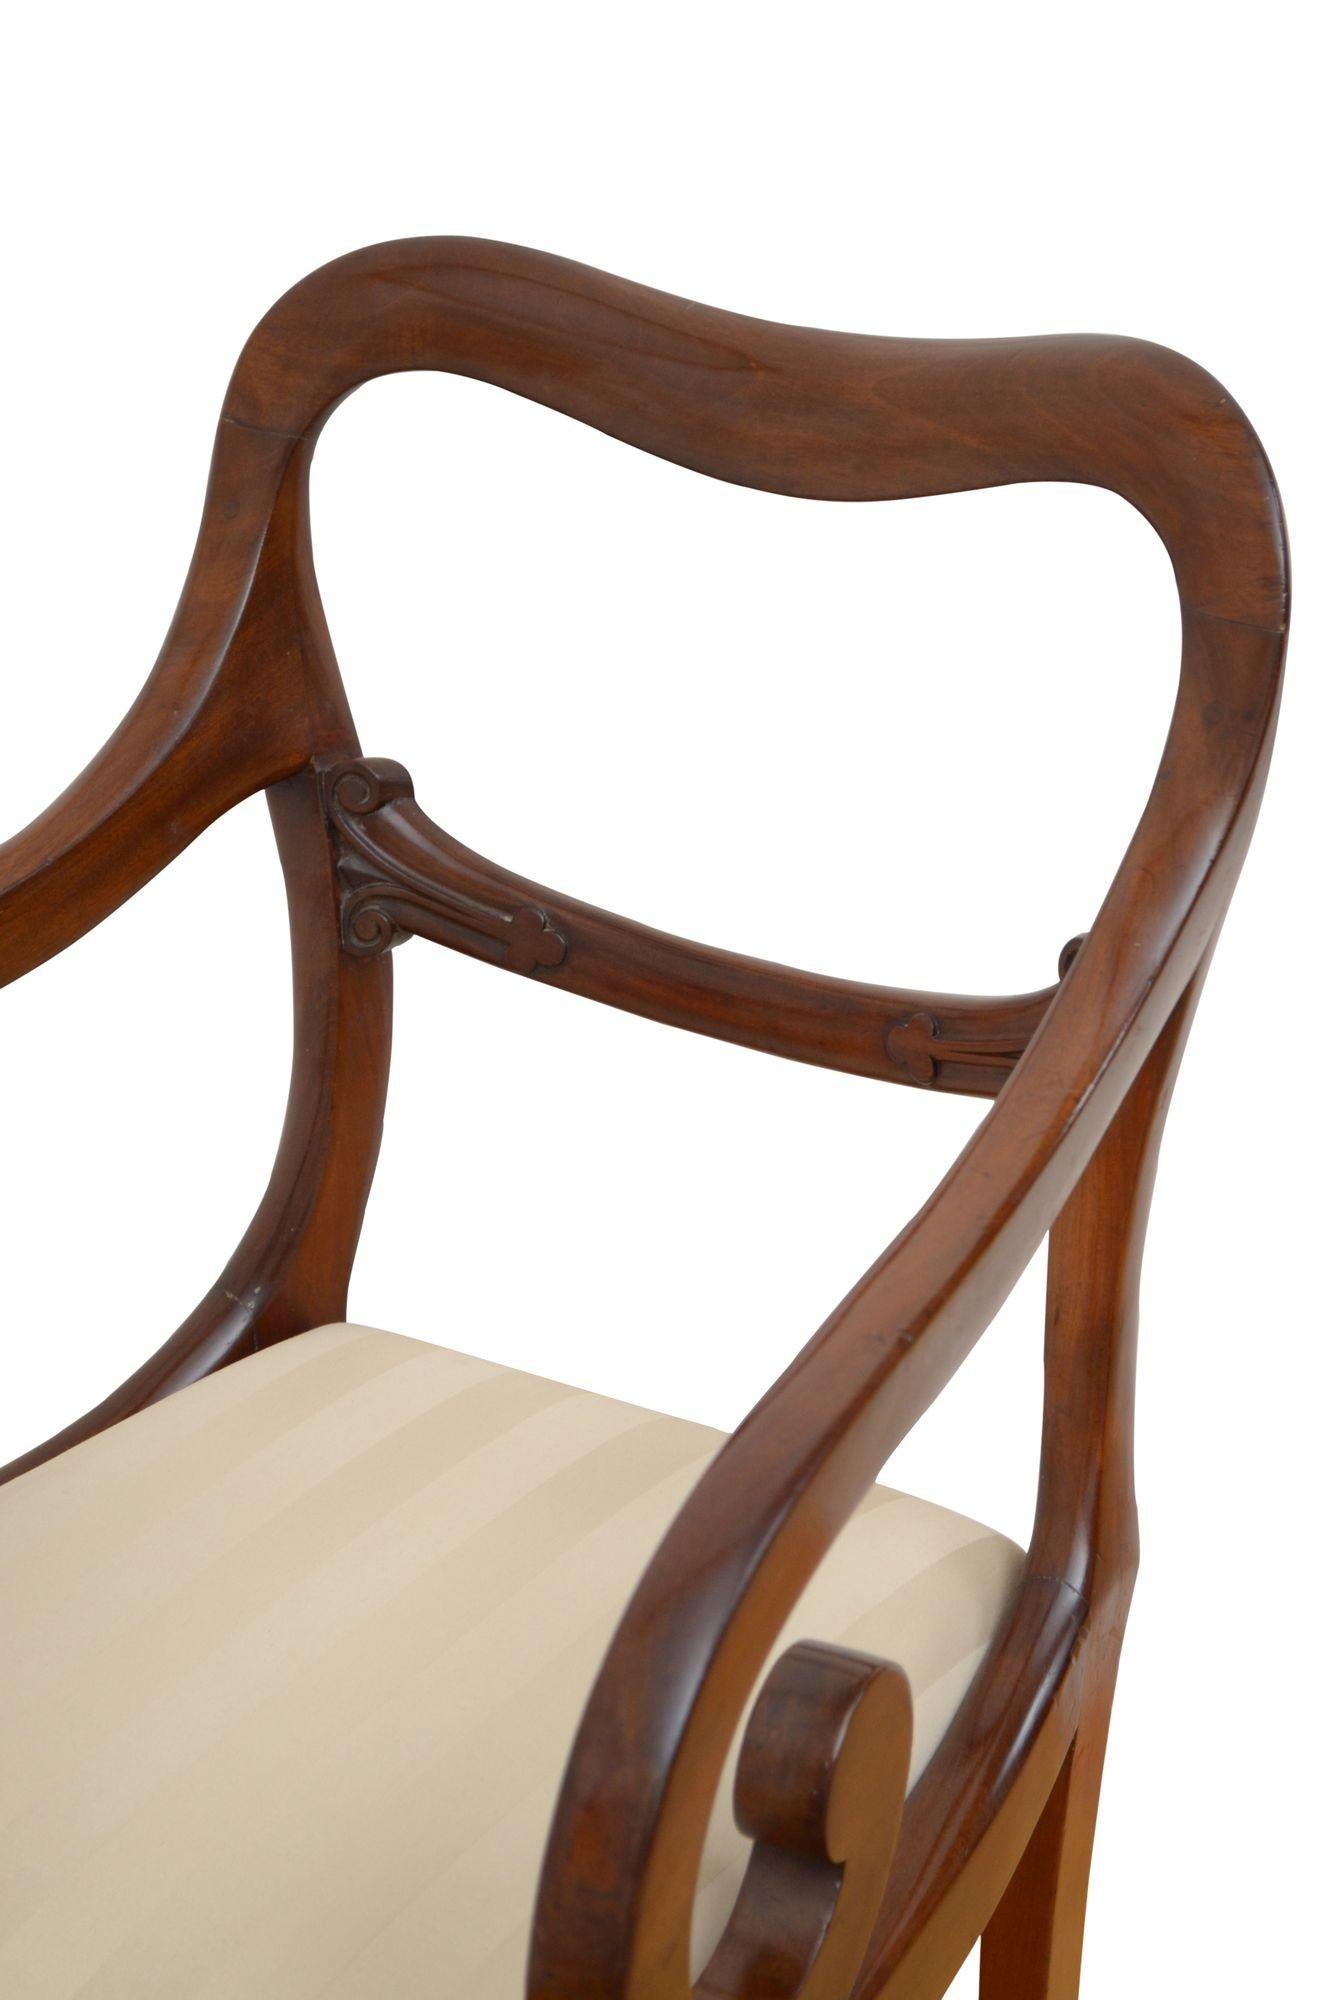 P0244 Hochwertiger Beistellstuhl aus massivem Mahagoni William IV. mit geformter oberer Schiene über geschnitzten Mittelschienen und einem mit cremefarbenem Stoff gepolsterten Klappsitz, flankiert von offenen, geschwungenen Armlehnen, die auf